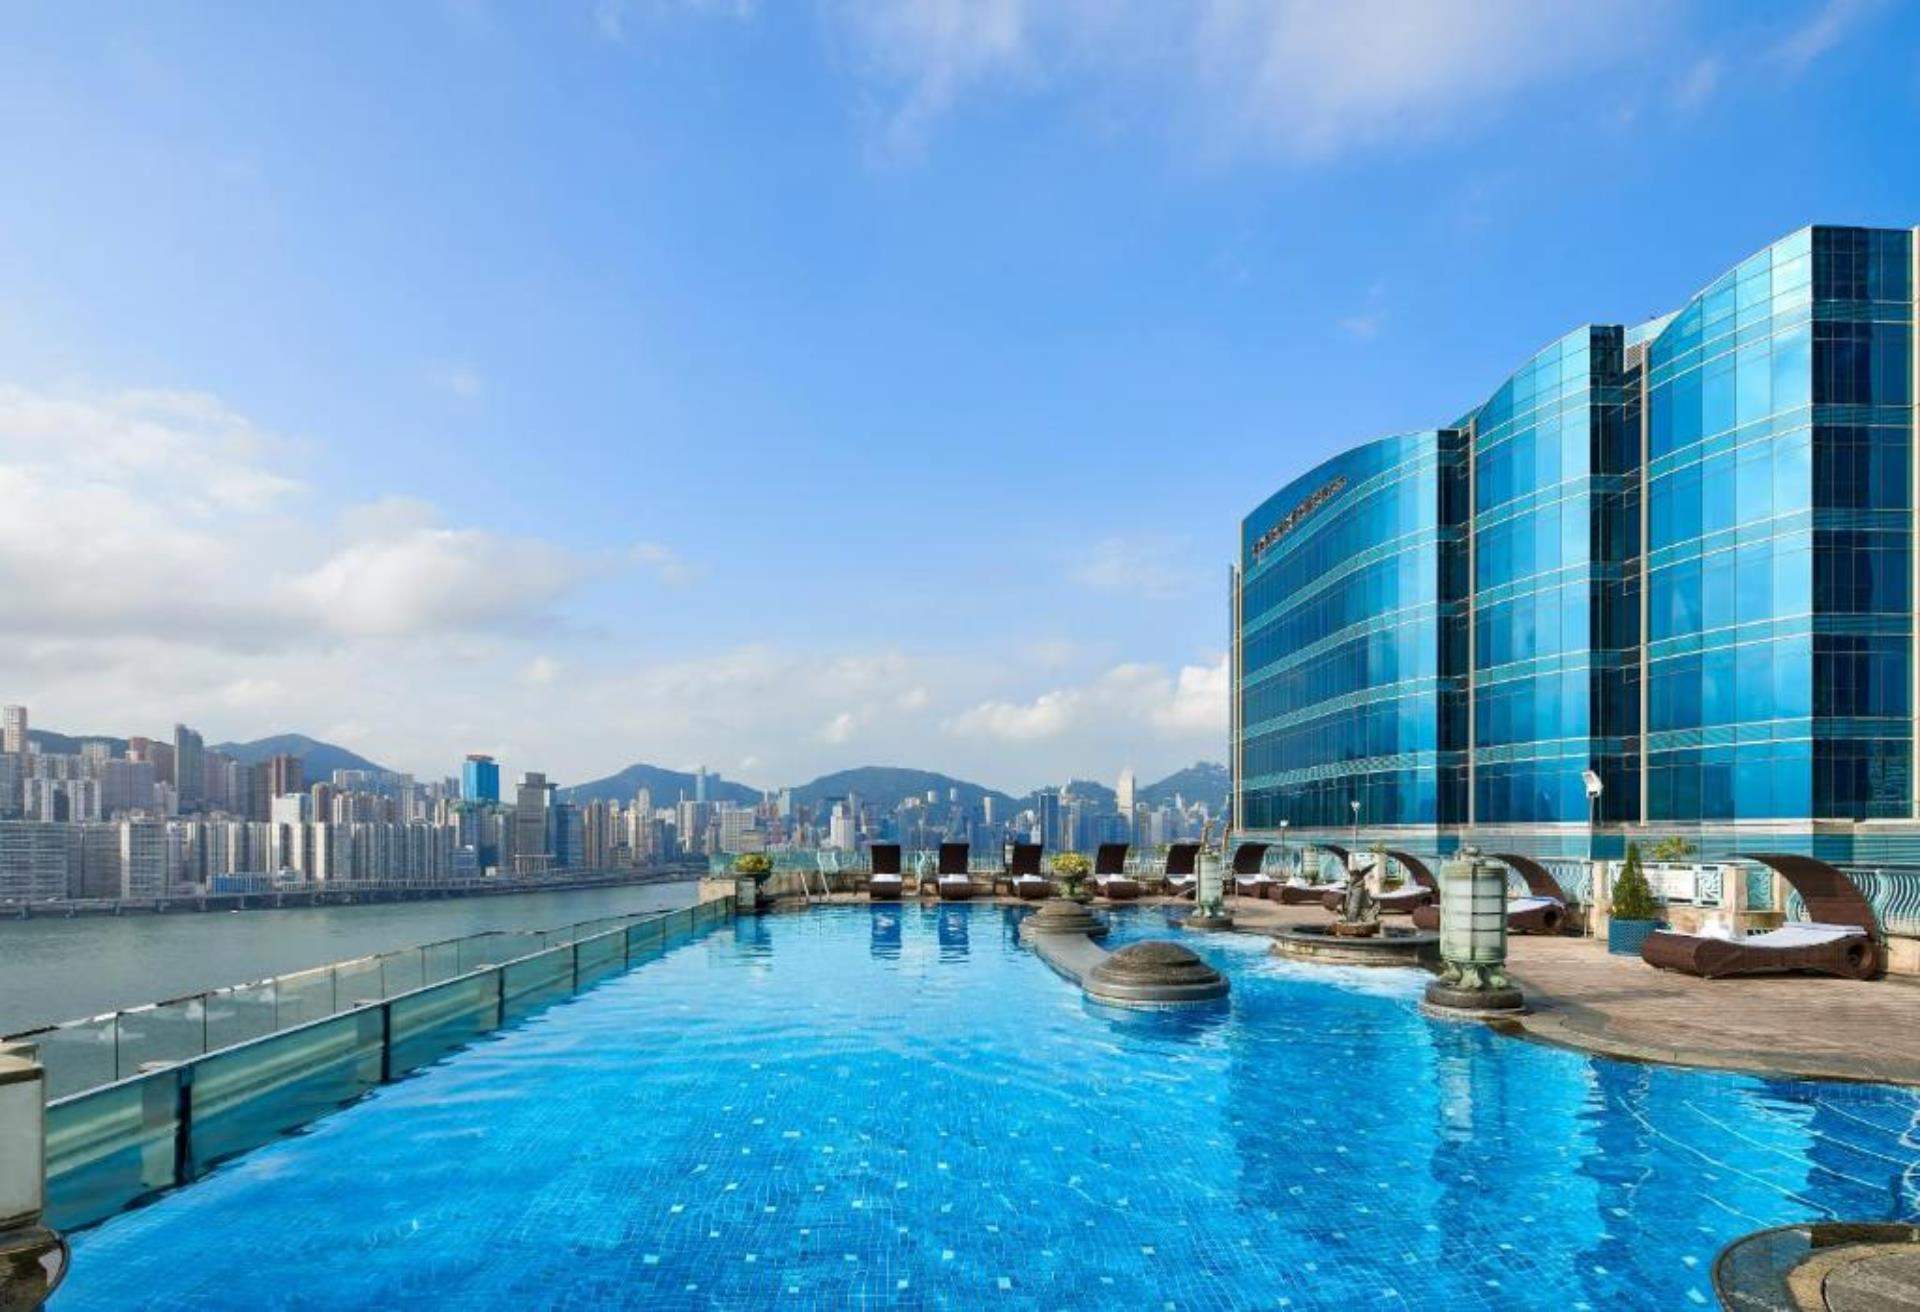 九龍海逸君綽酒店,頂樓泳池酒店,rooftop pool